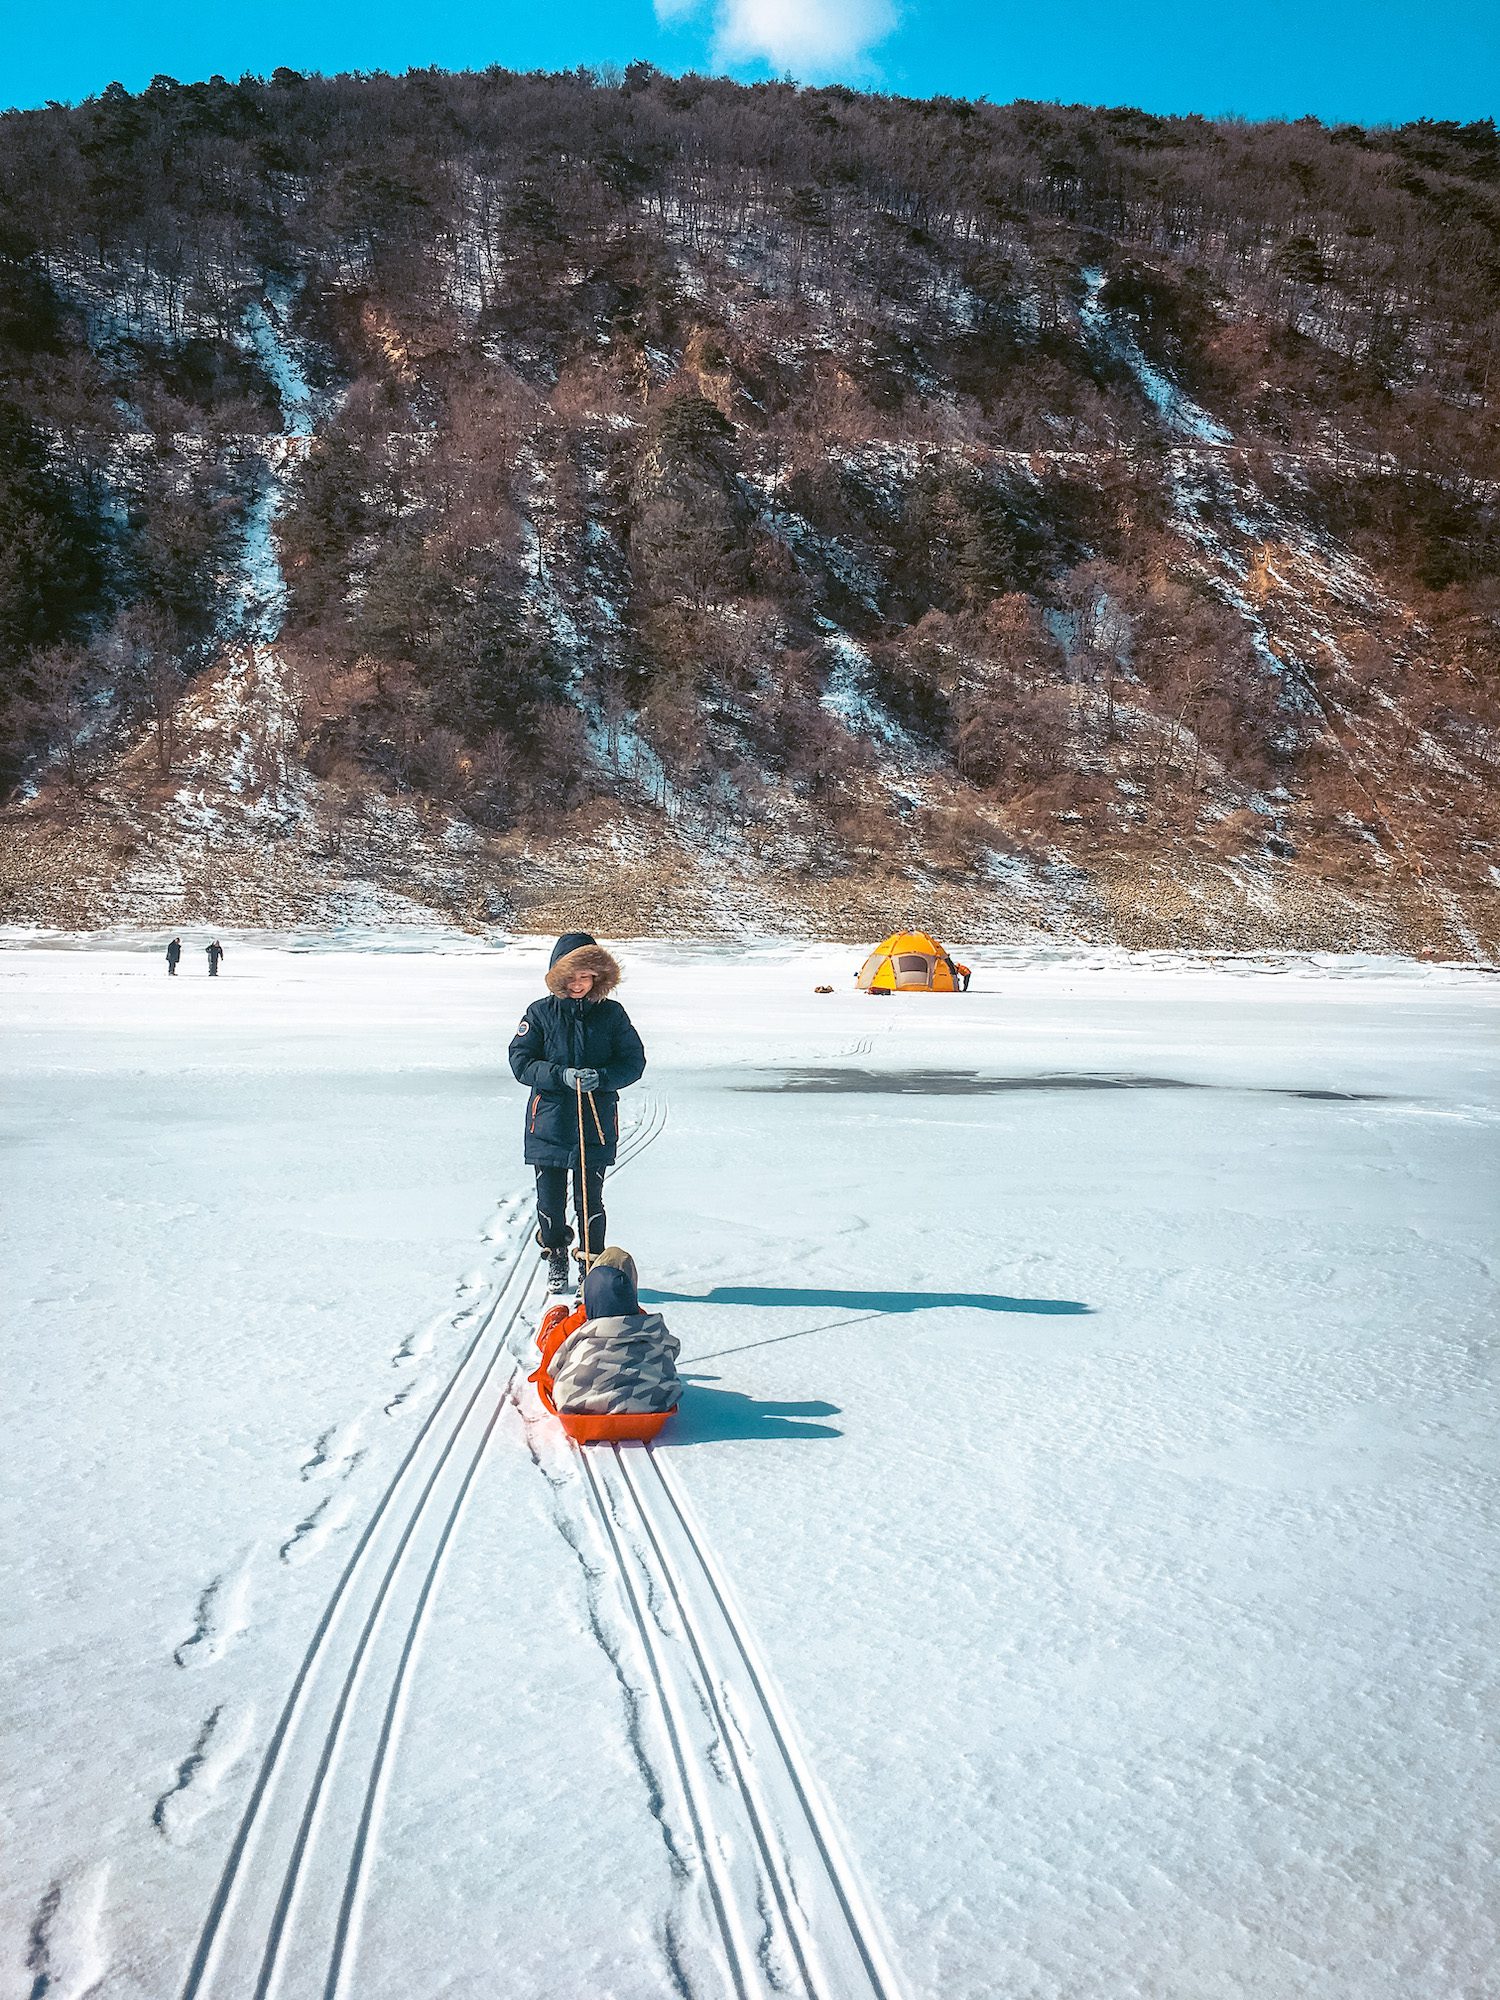 sledding on frozen ice during winter in korea